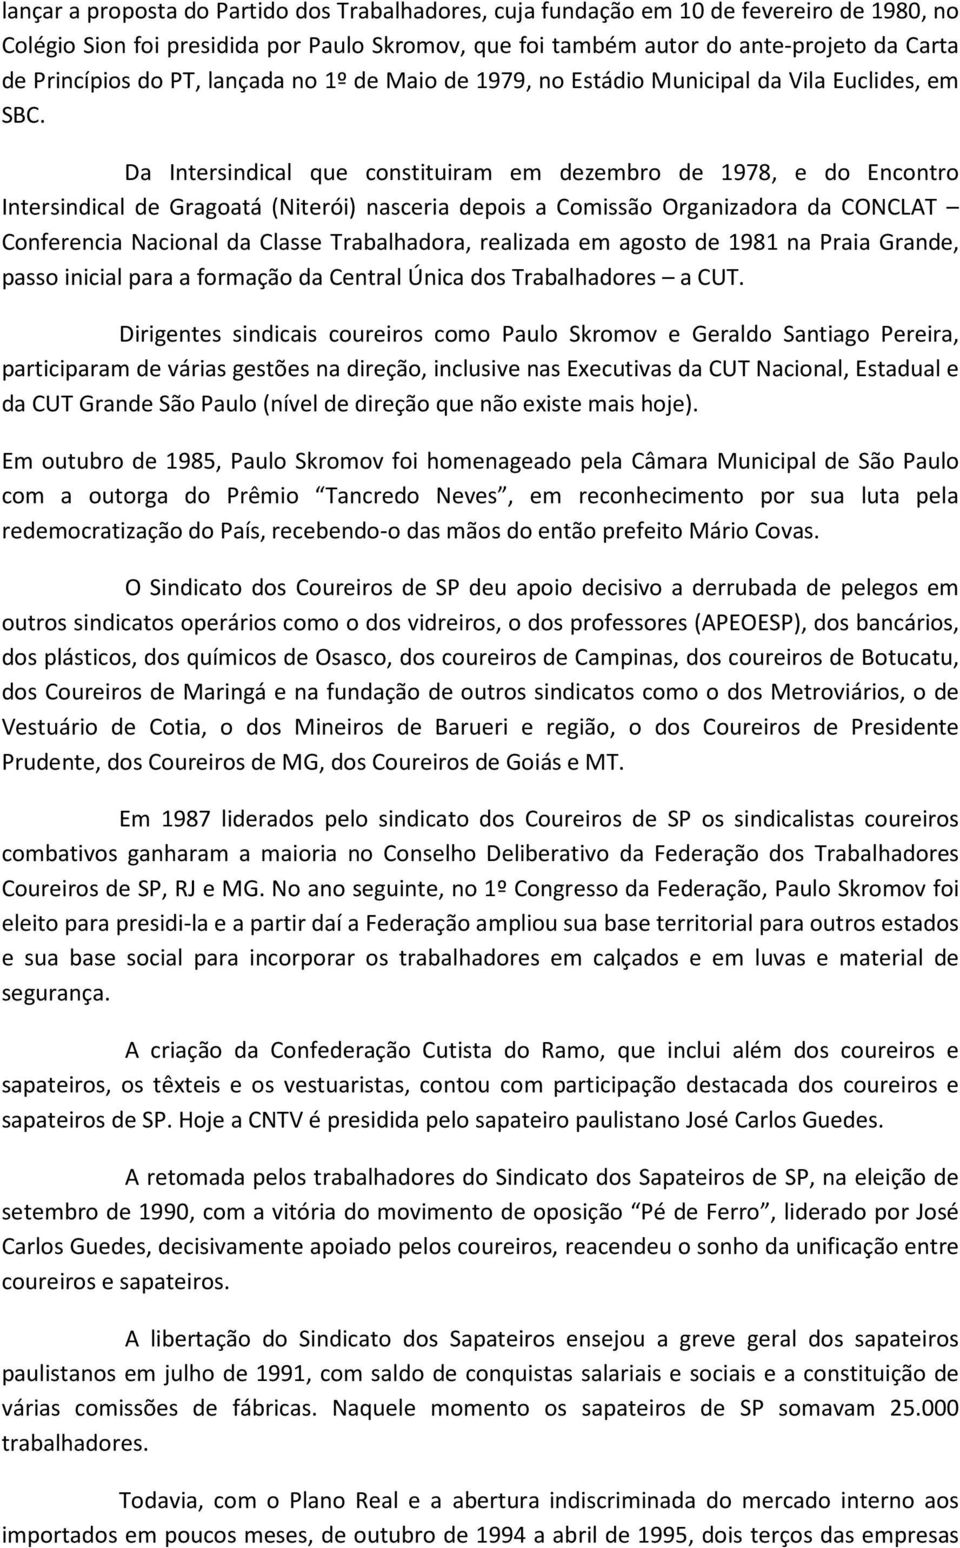 Da Intersindical que constituiram em dezembro de 1978, e do Encontro Intersindical de Gragoatá (Niterói) nasceria depois a Comissão Organizadora da CONCLAT Conferencia Nacional da Classe